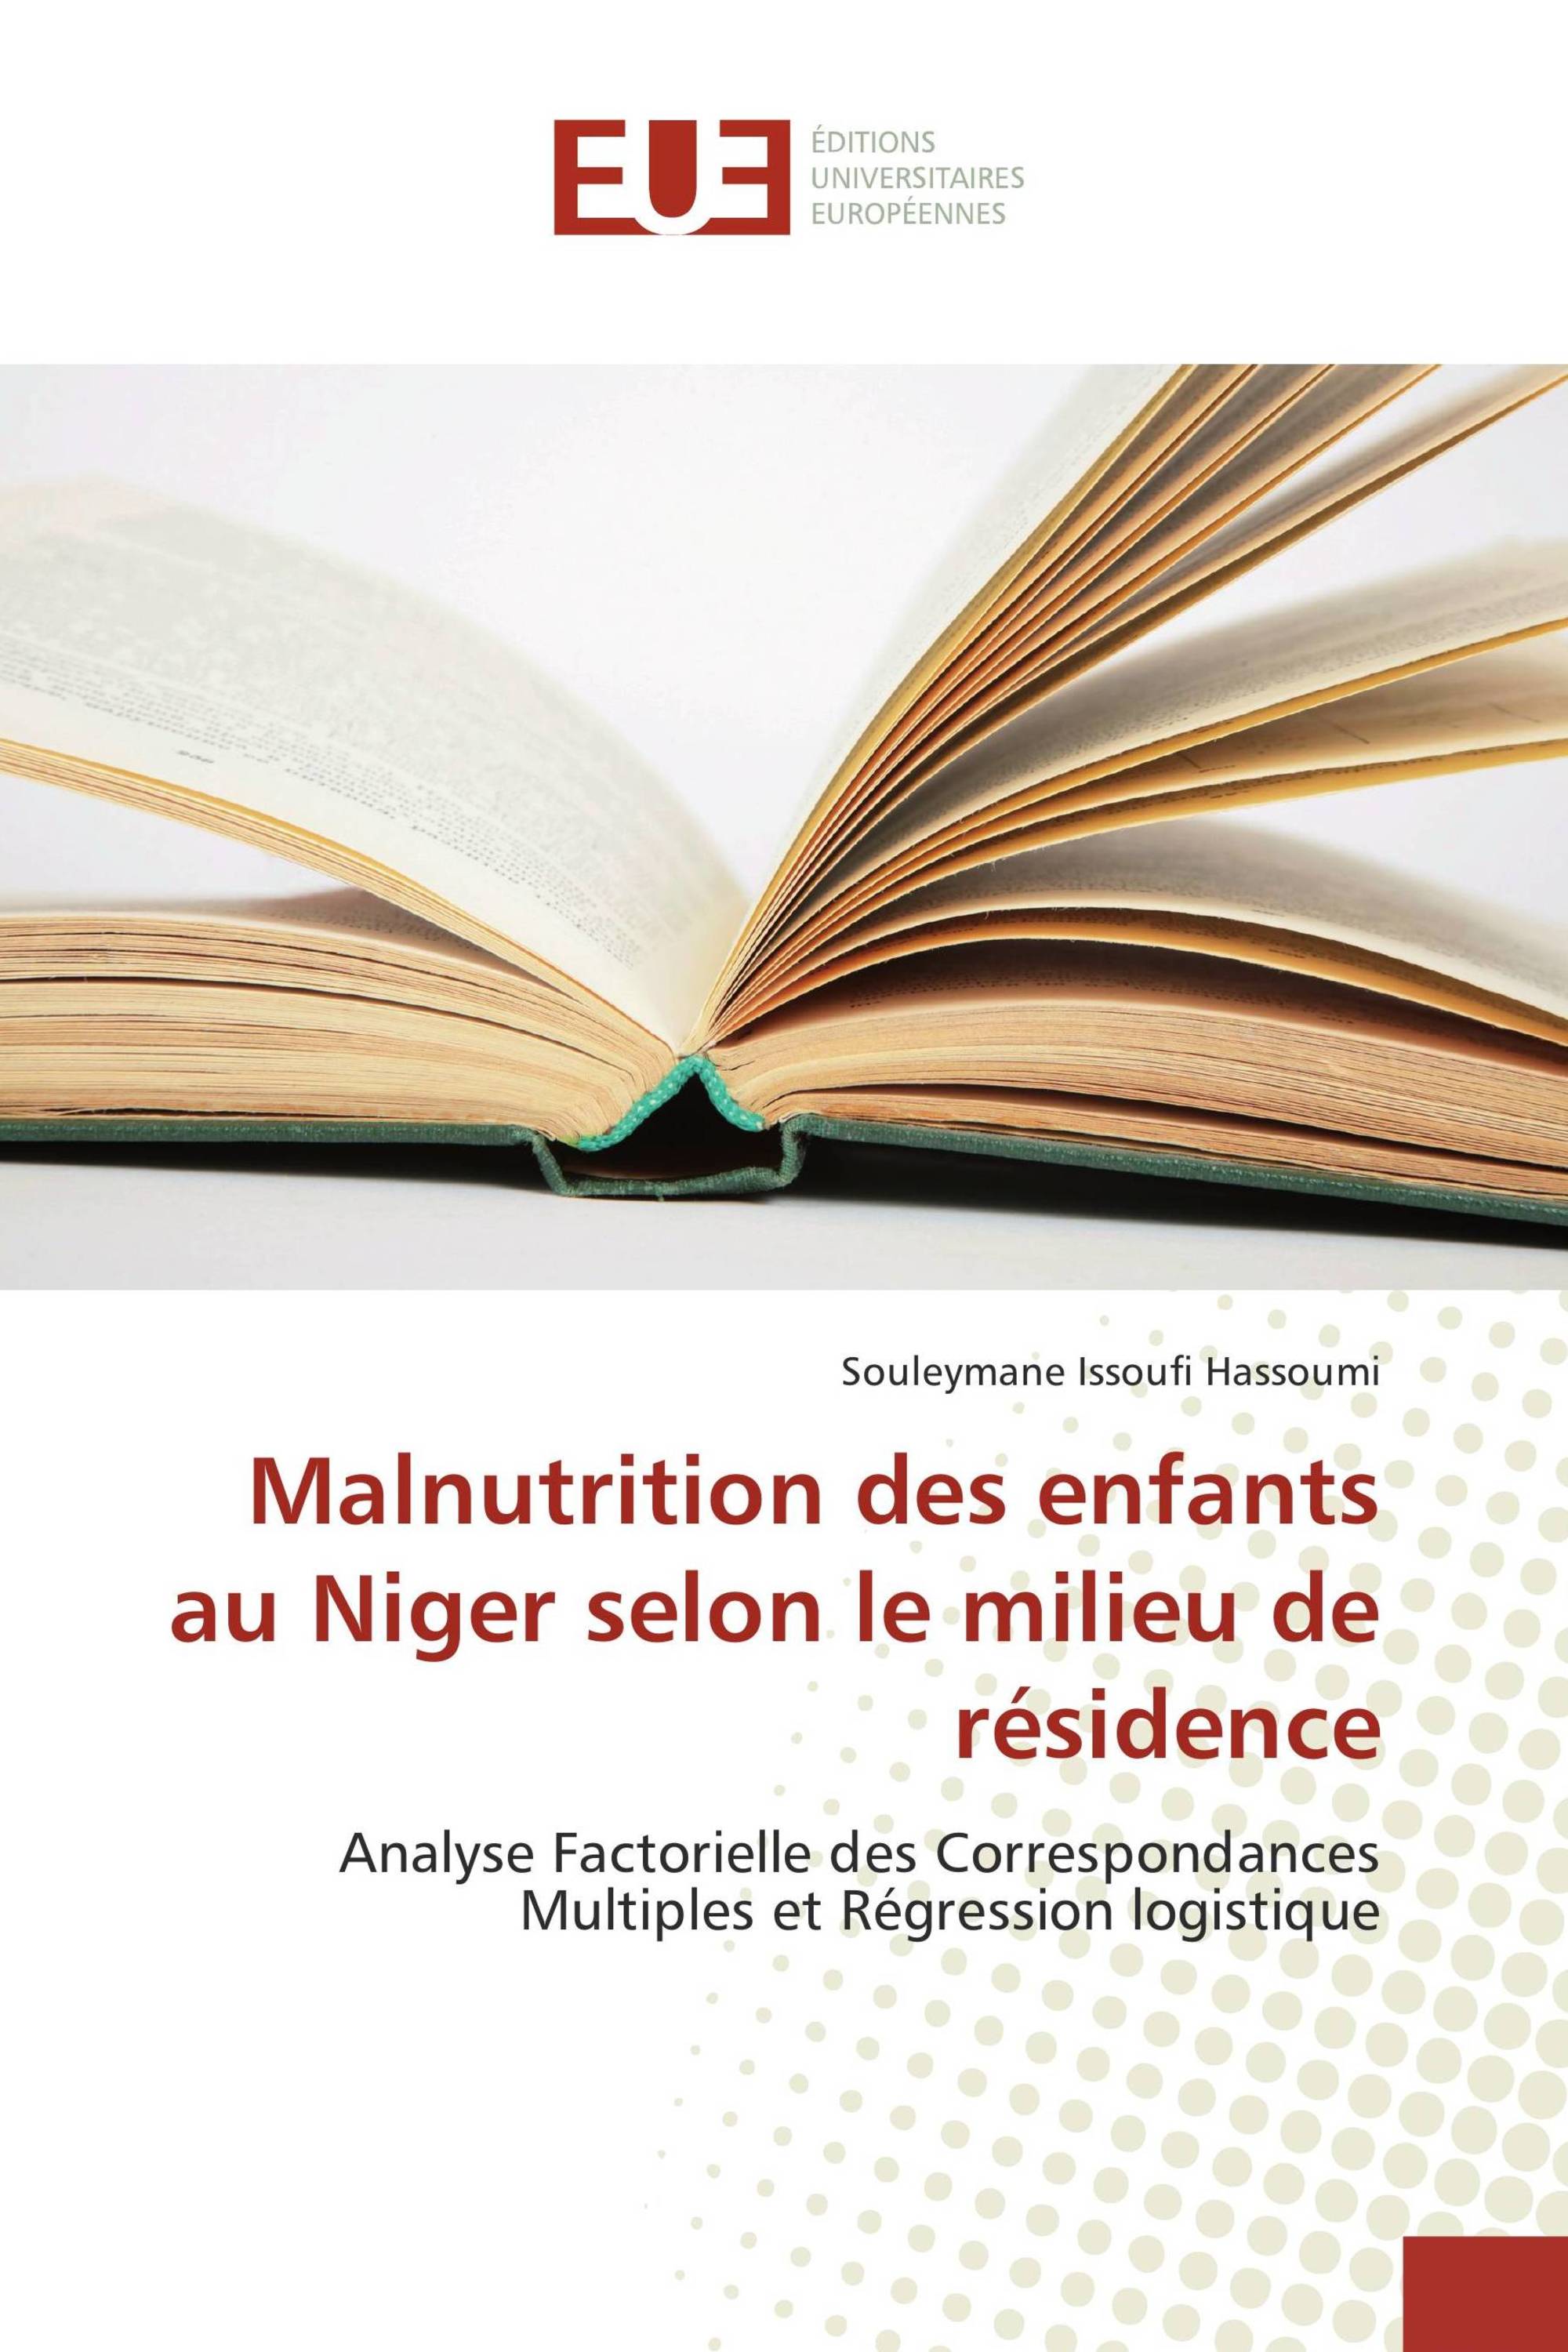 Malnutrition des enfants au Niger selon le milieu de résidence